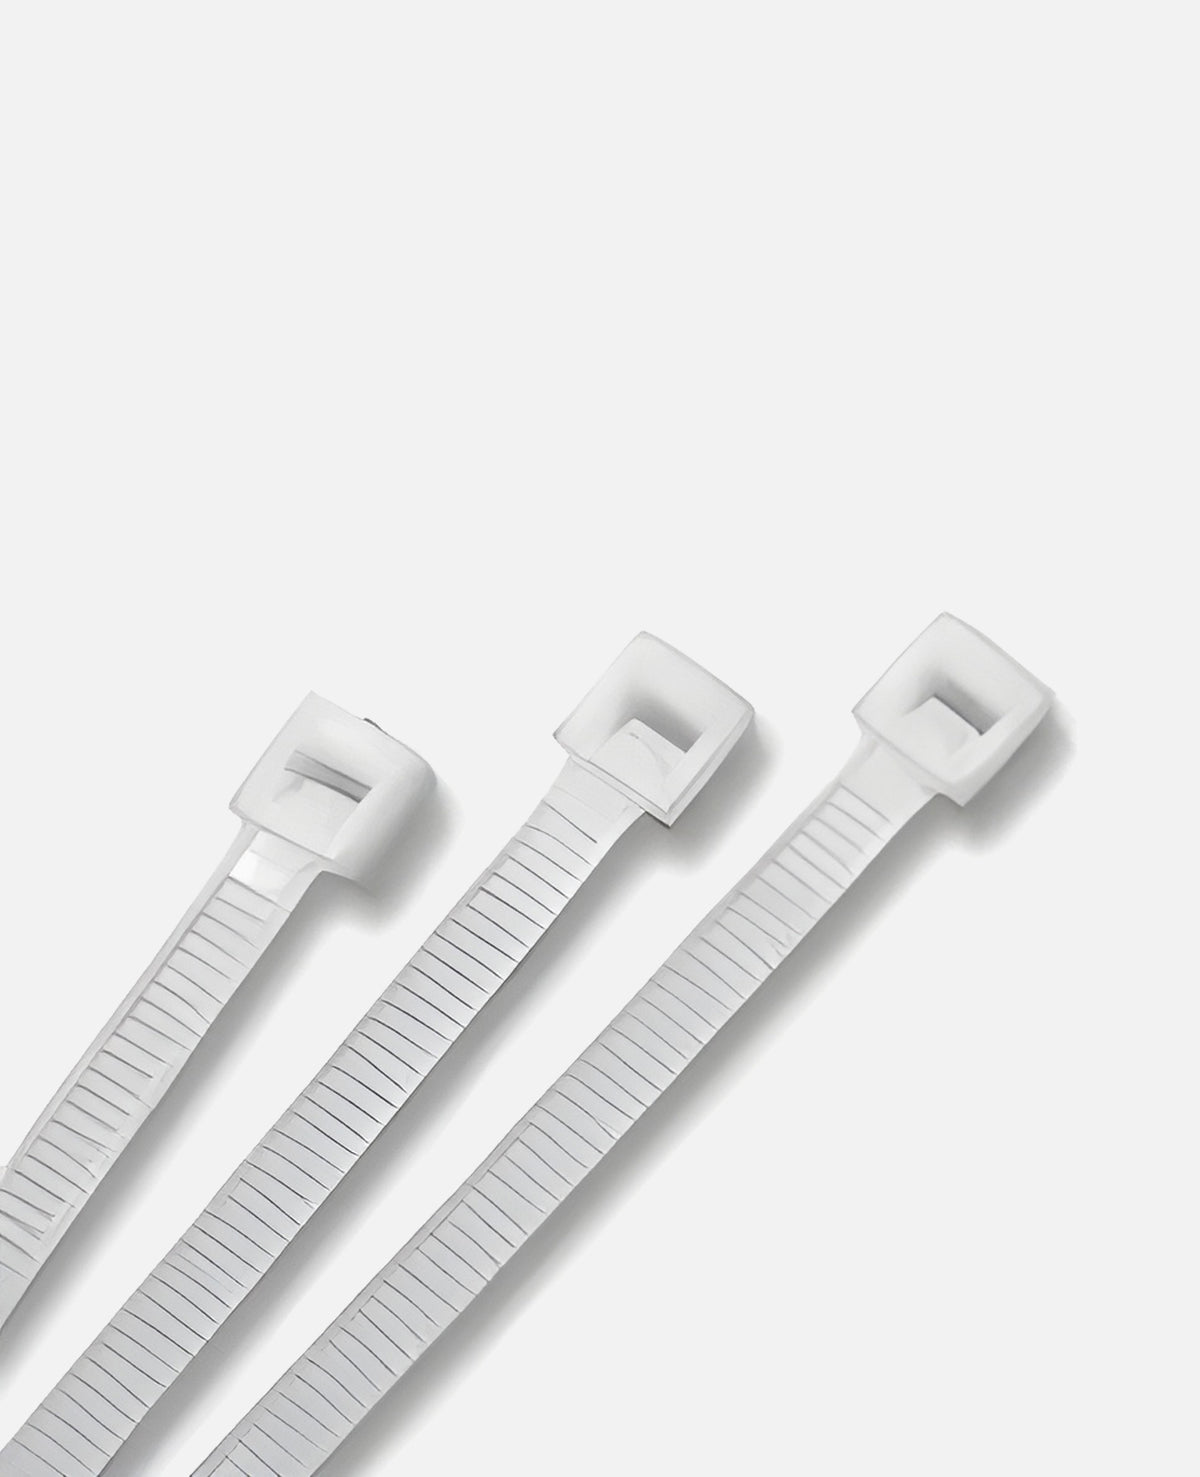 11" White Nylon Zip Ties, Indoor/Outdoor, 50lb, Heavy Duty, Directv Approved